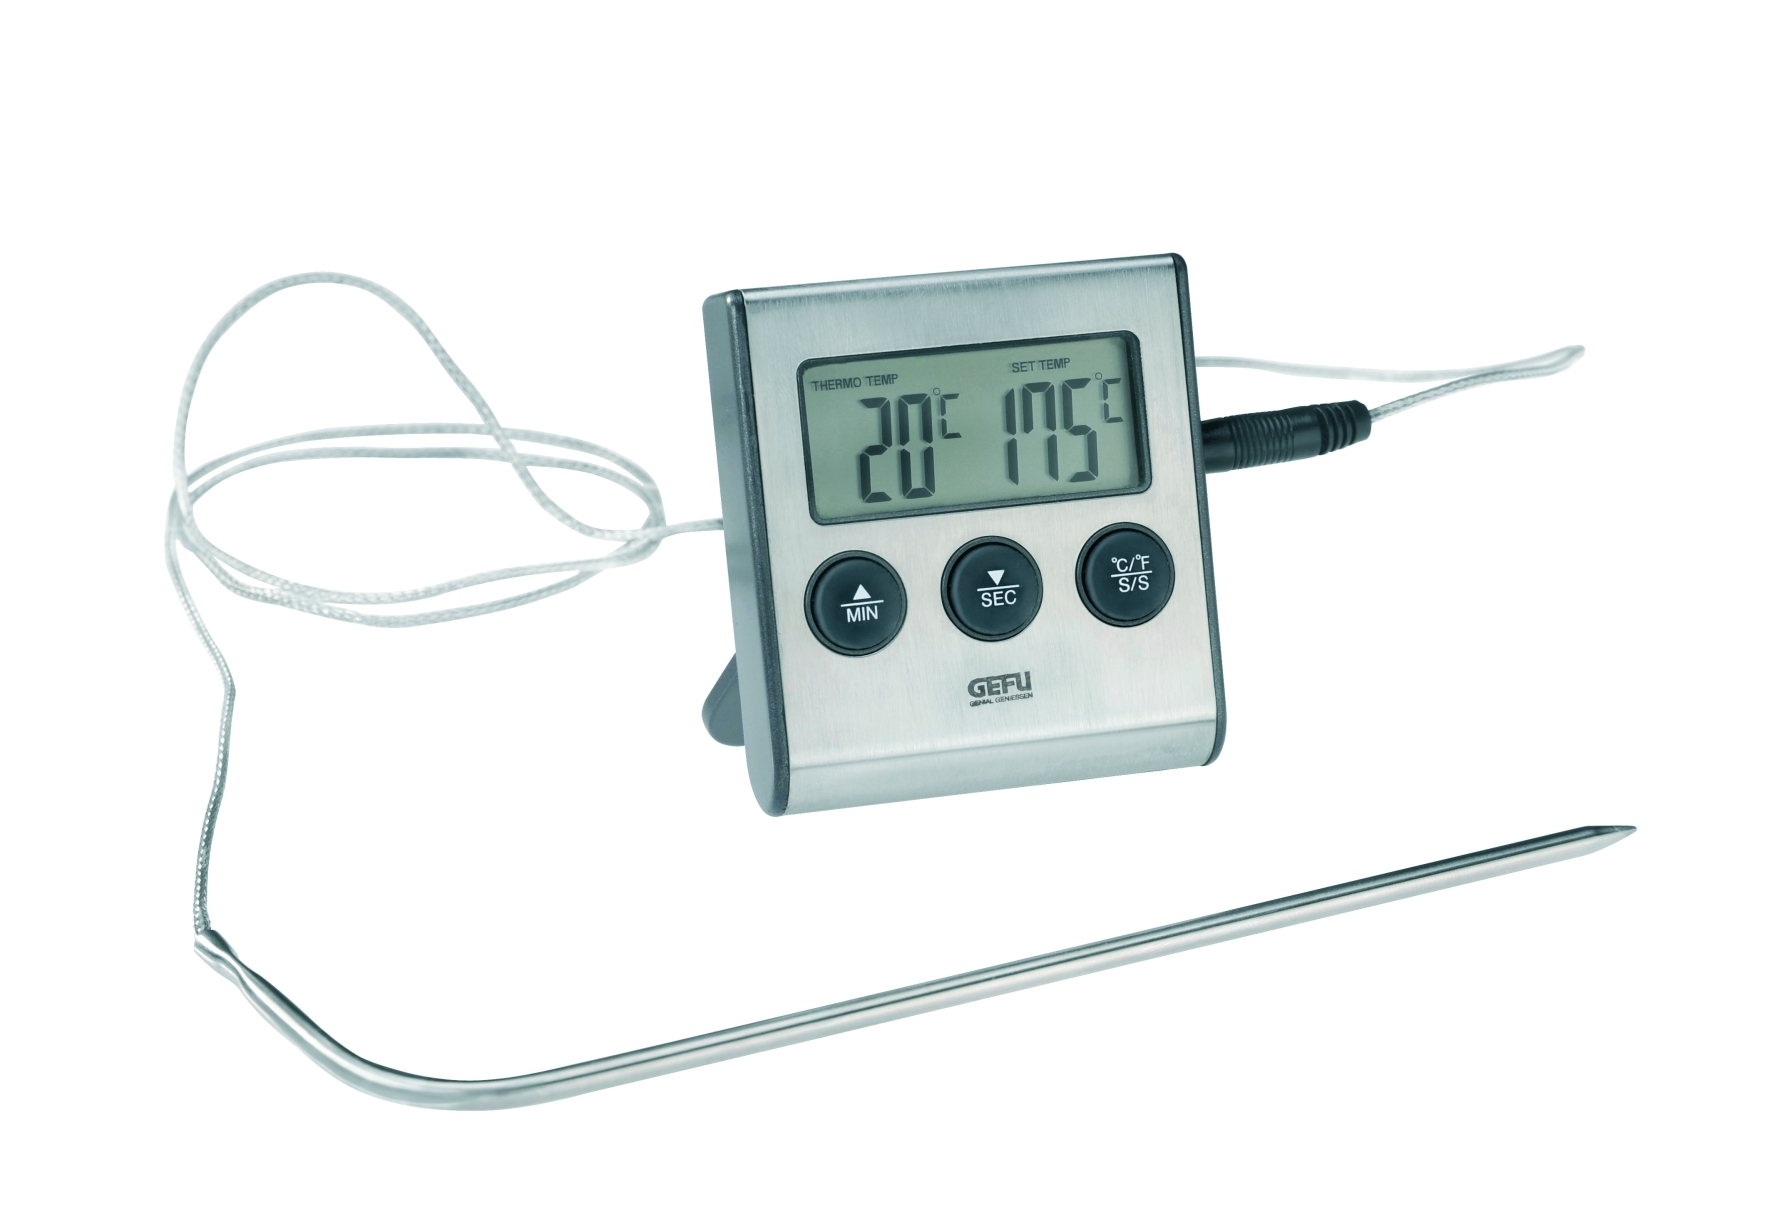 Bratenthermometer Messbereich bis 250 °C,Timer,Magnet,Standfuß 